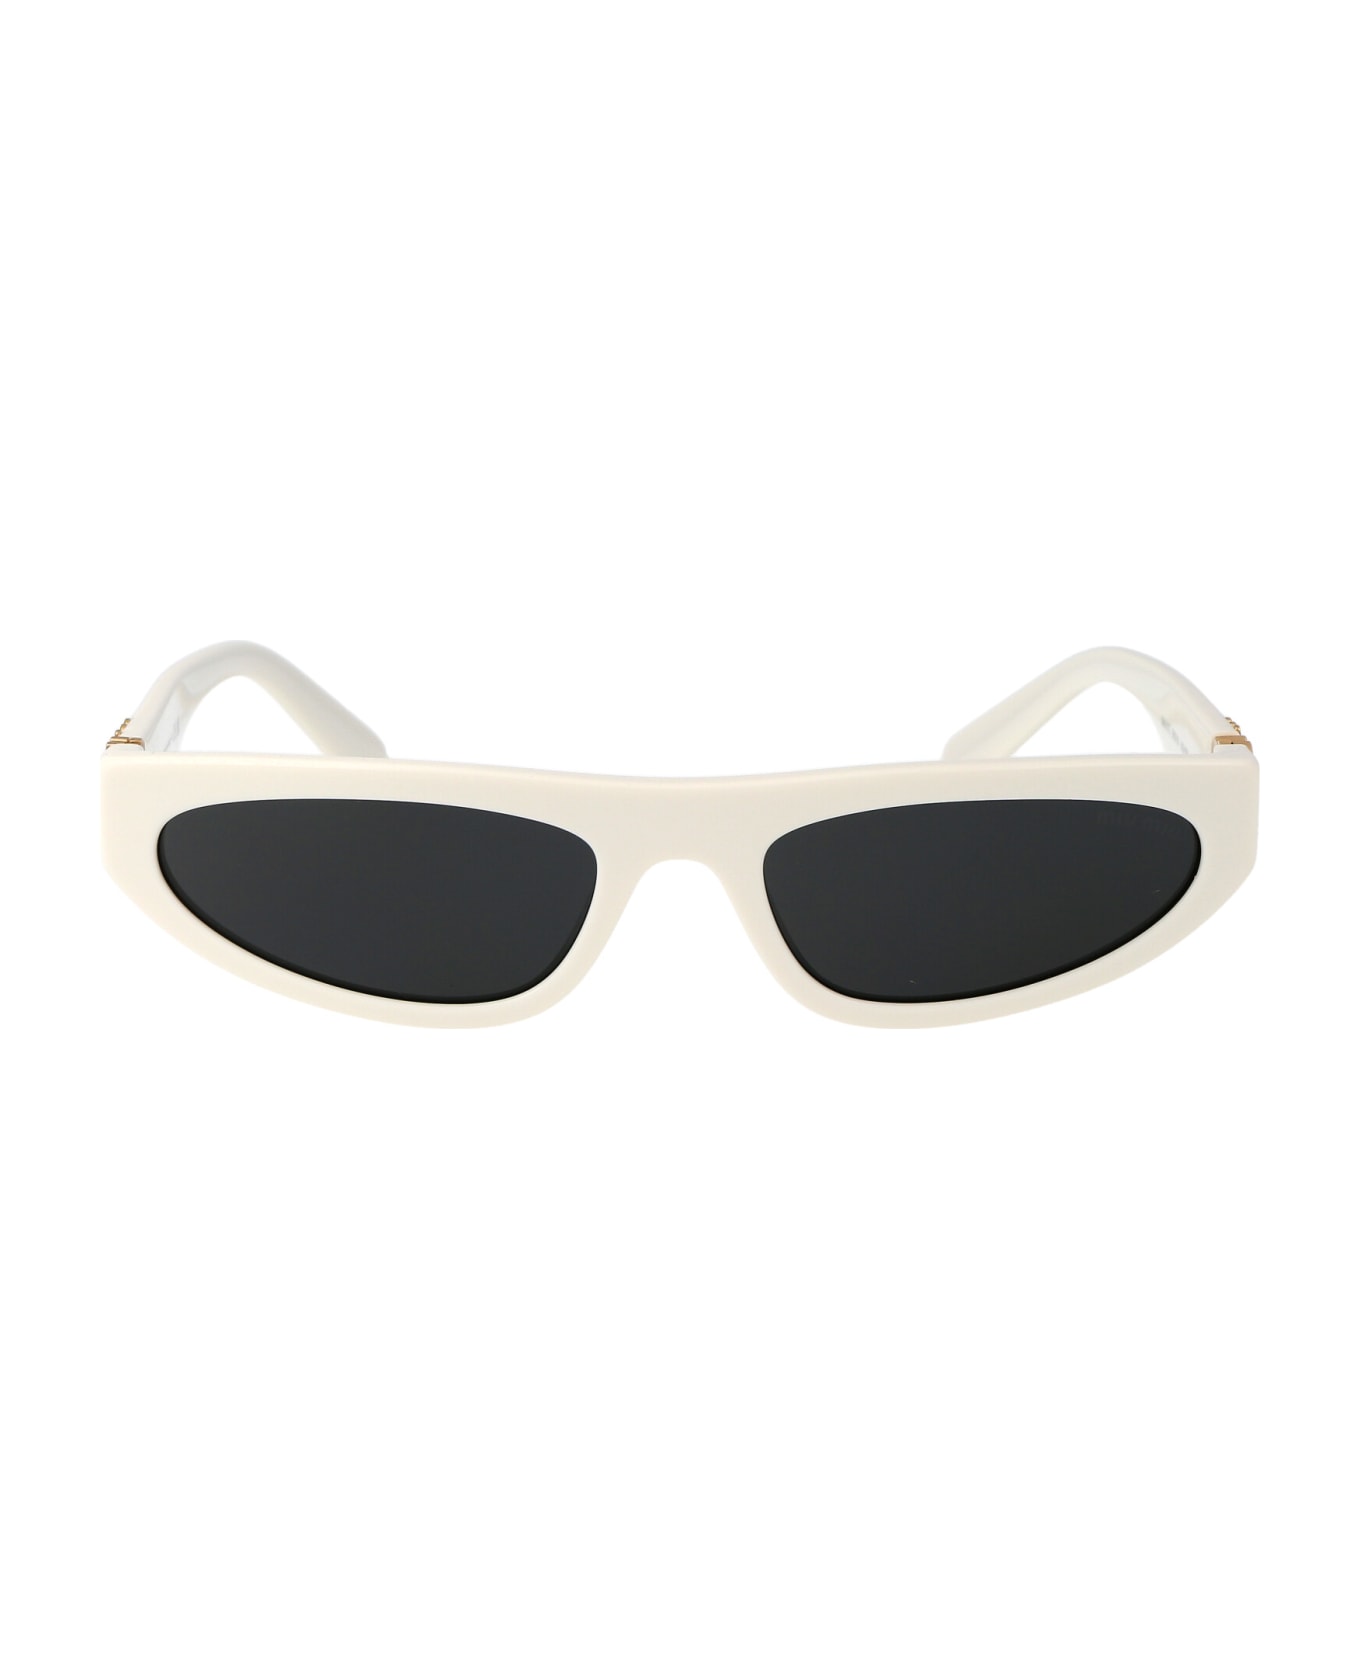 Miu Miu Eyewear 0mu 07zs Sunglasses - 1425S0 White Ivory